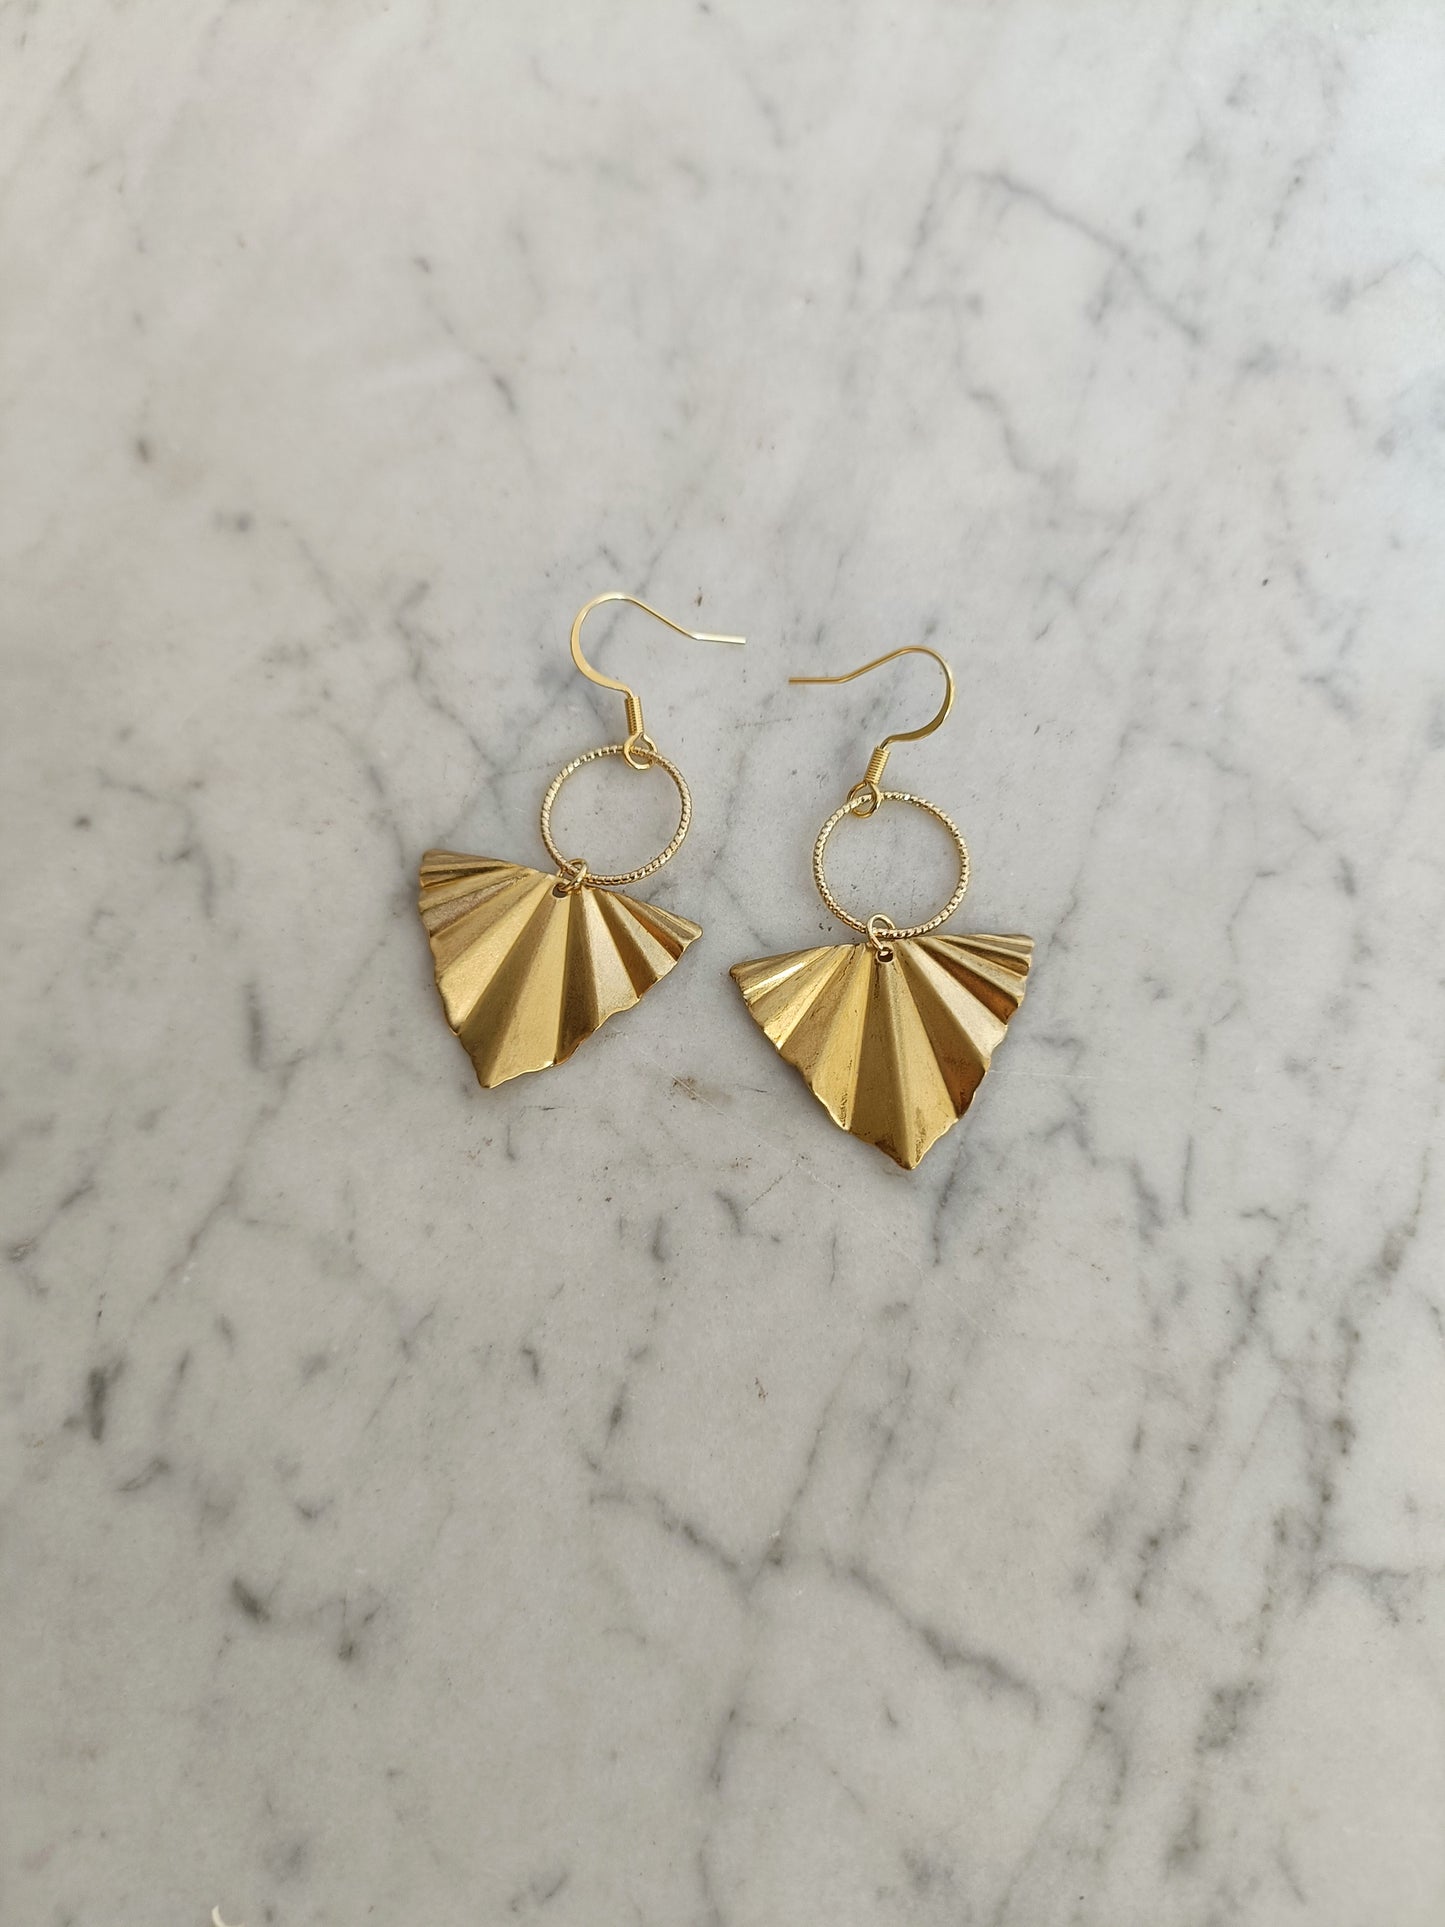 Boucles d'oreilles dorées triangles géométriques et anneaux ciselés 